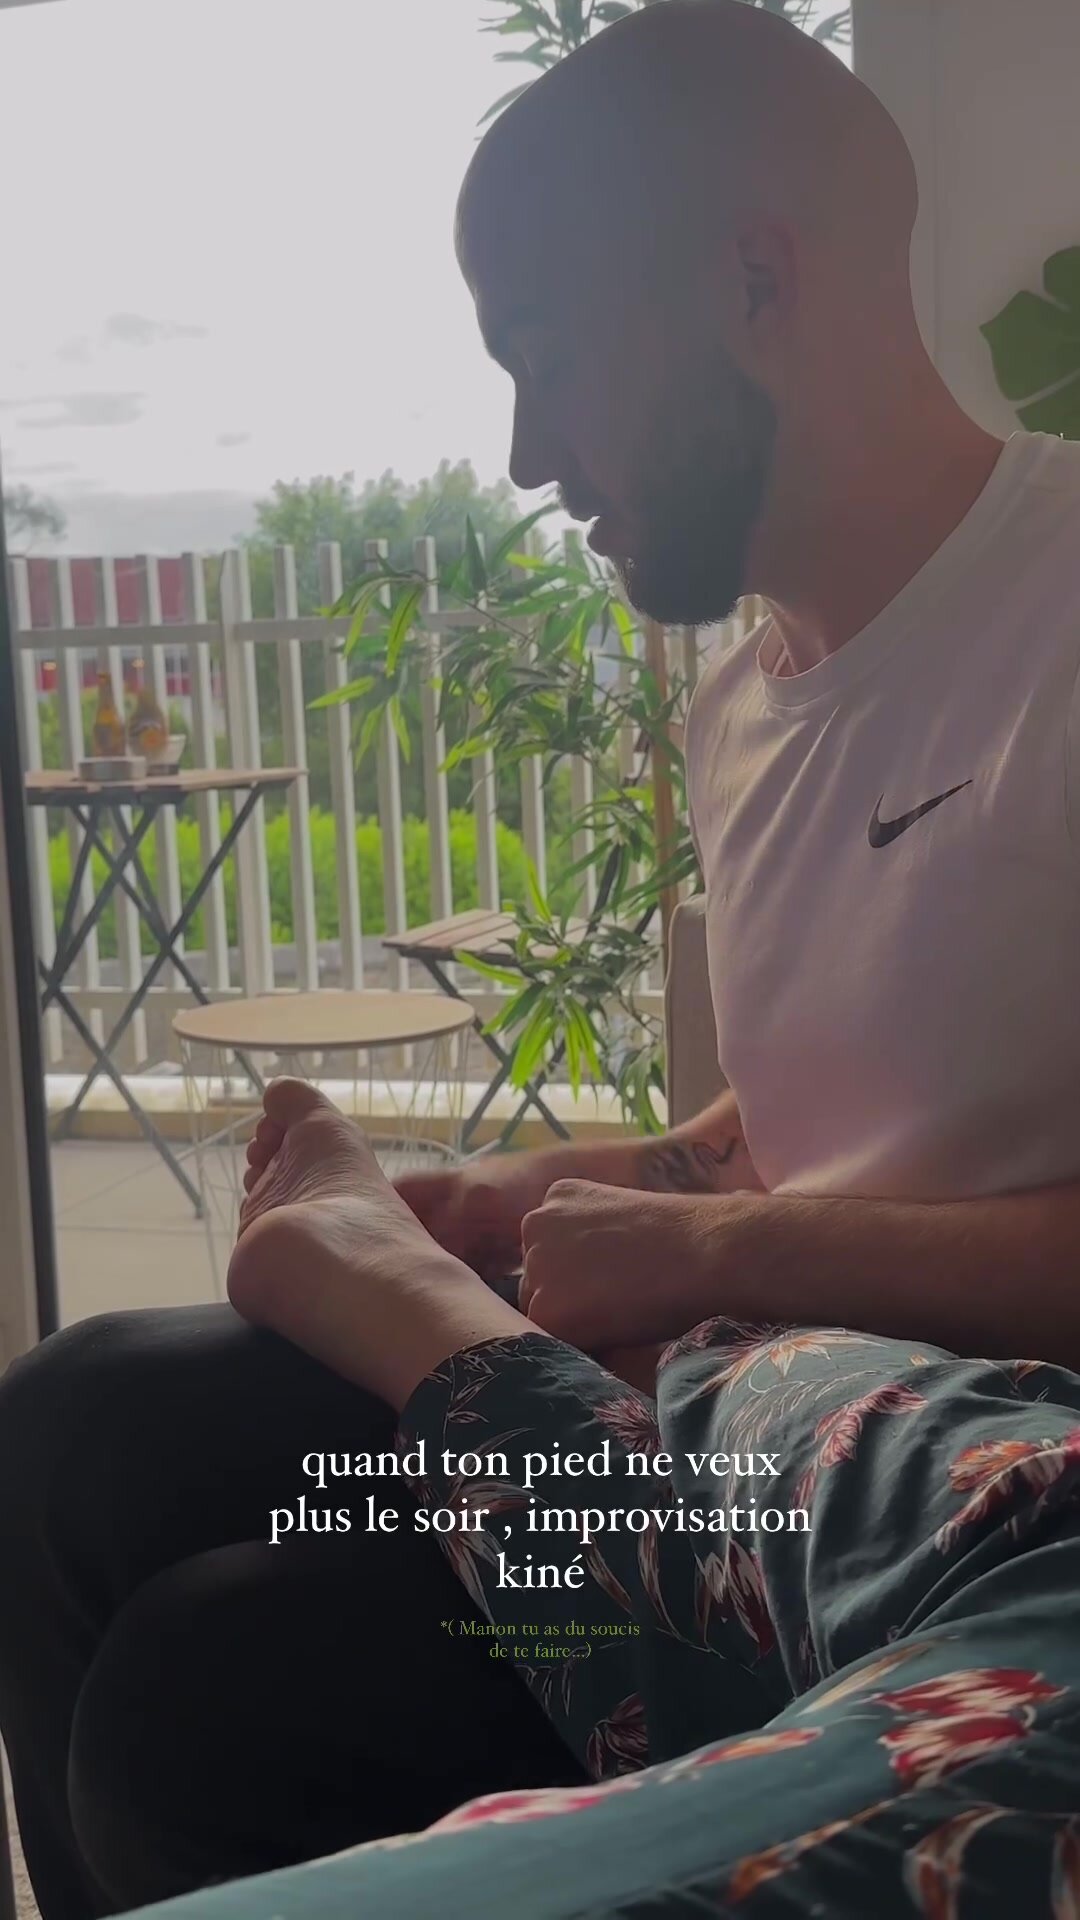 paraplegic foot massage